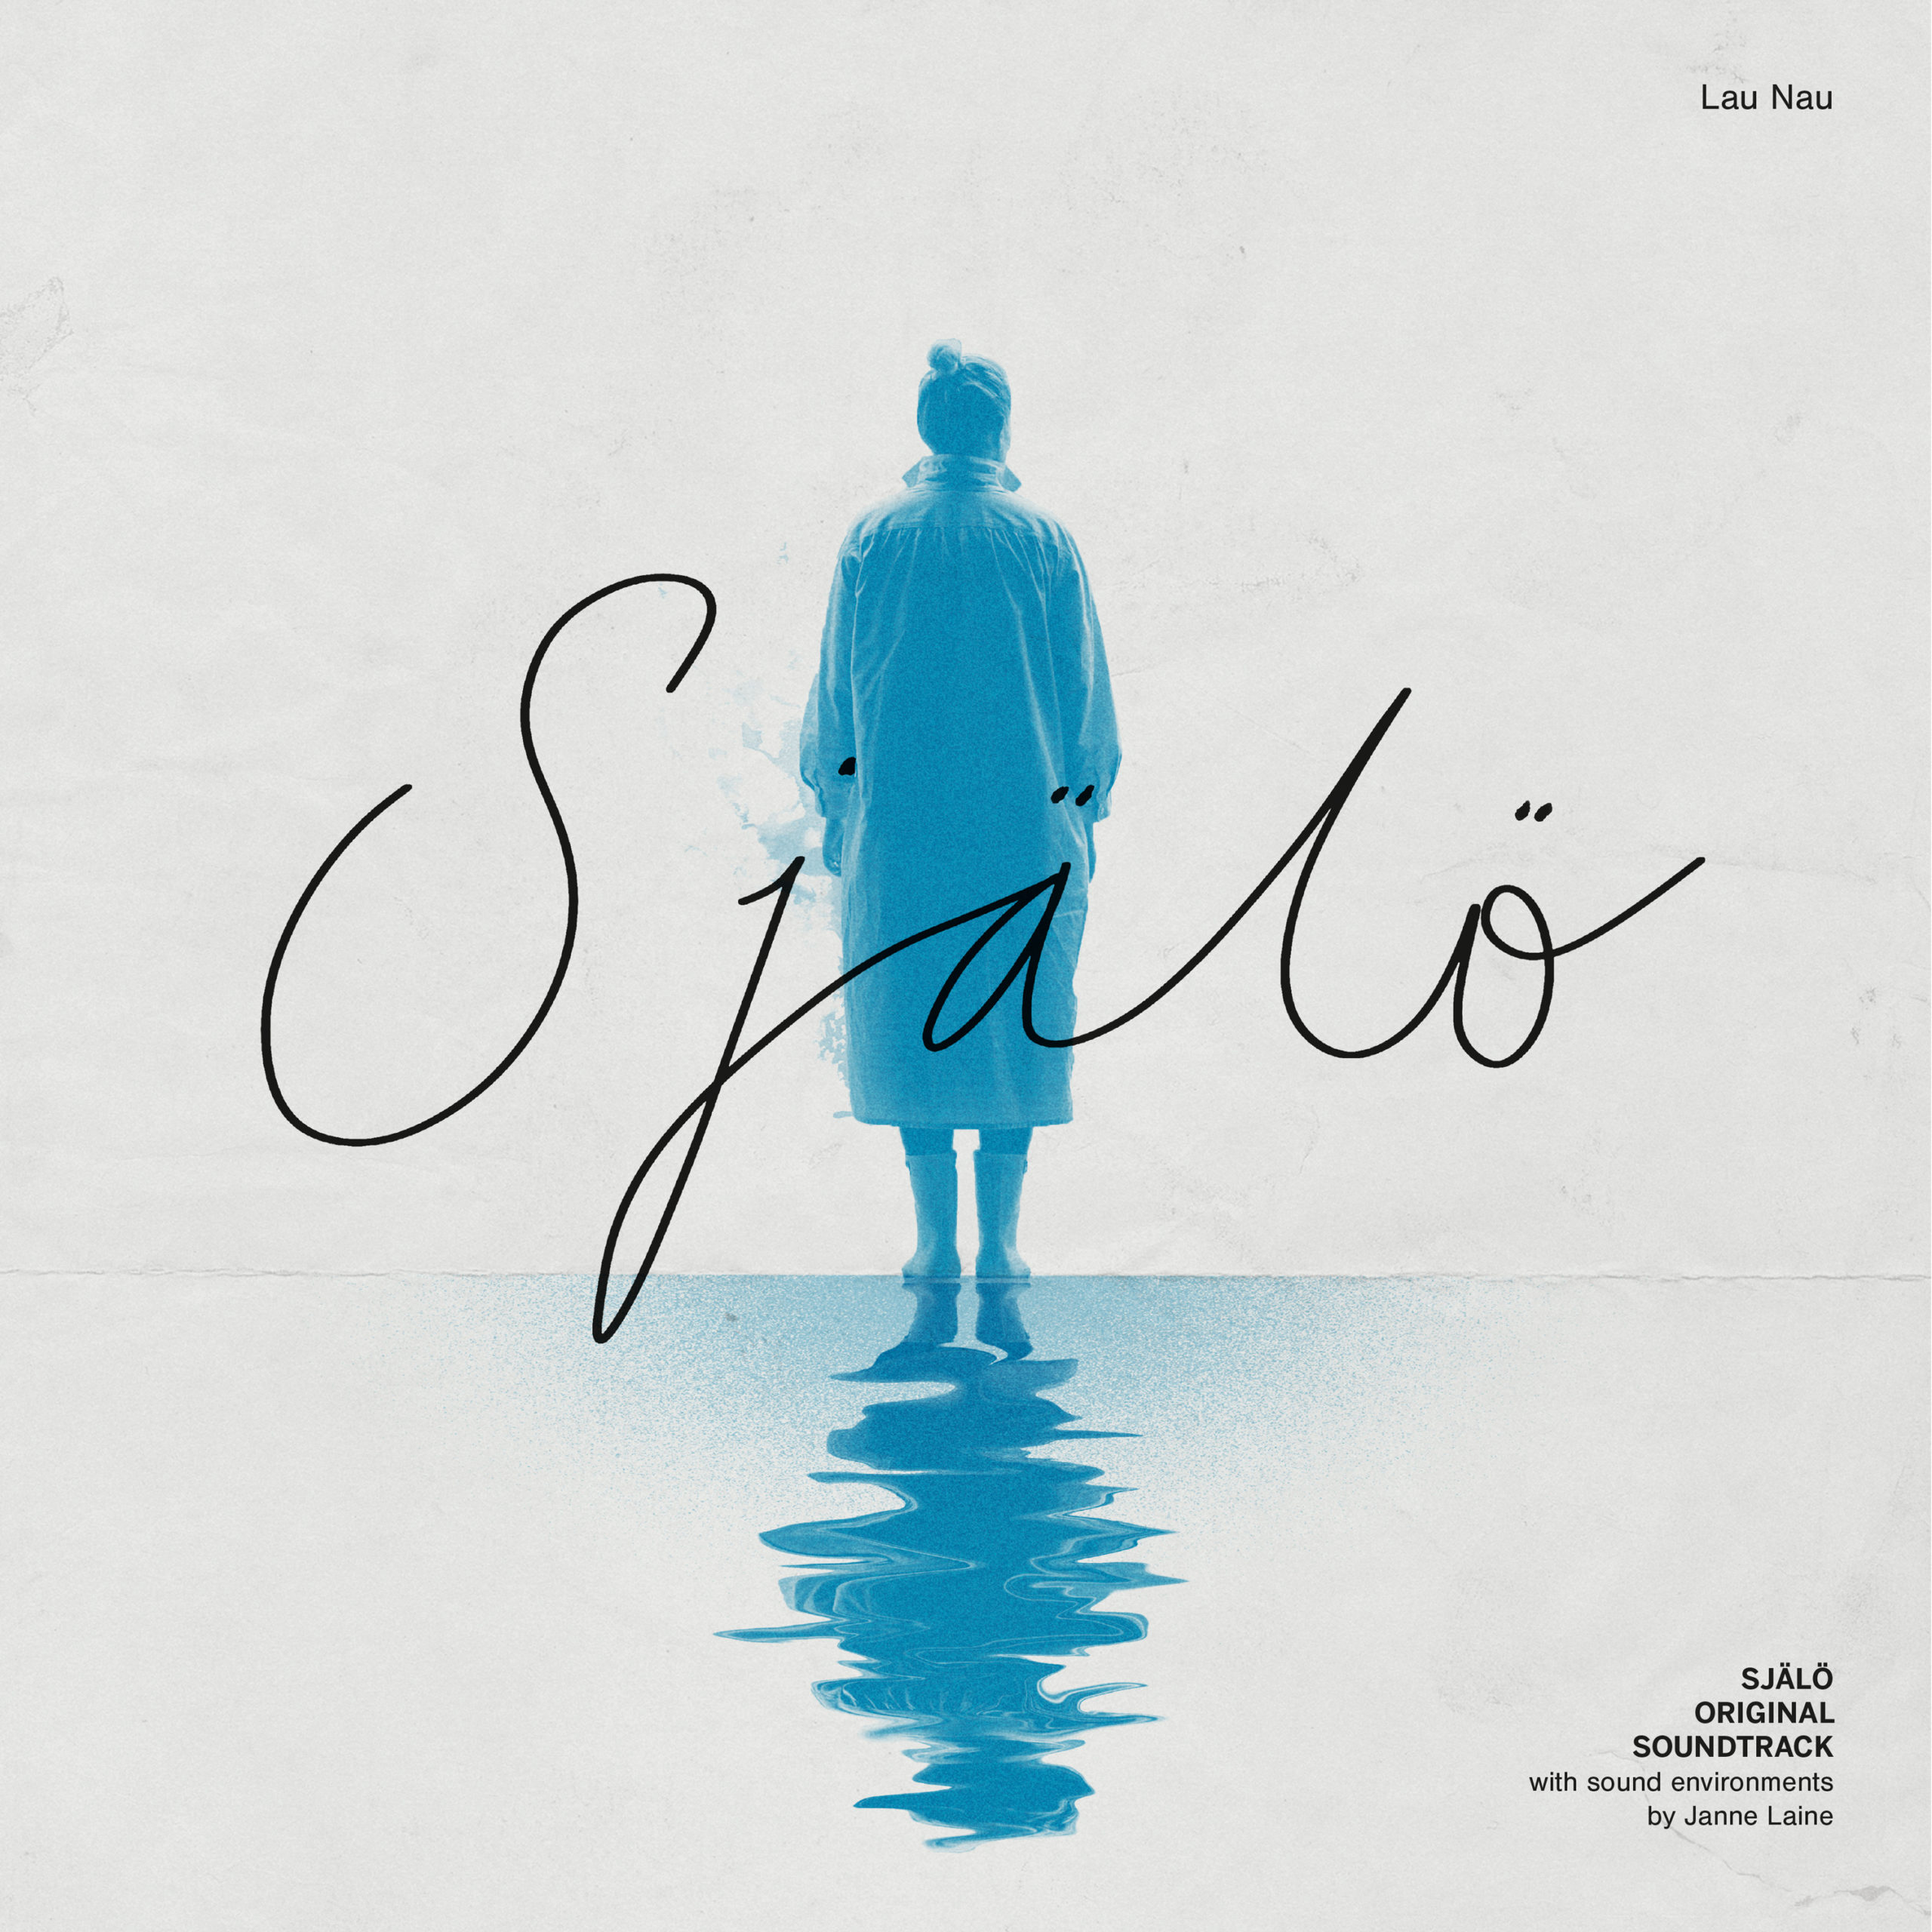 Själö – Original Soundtrack